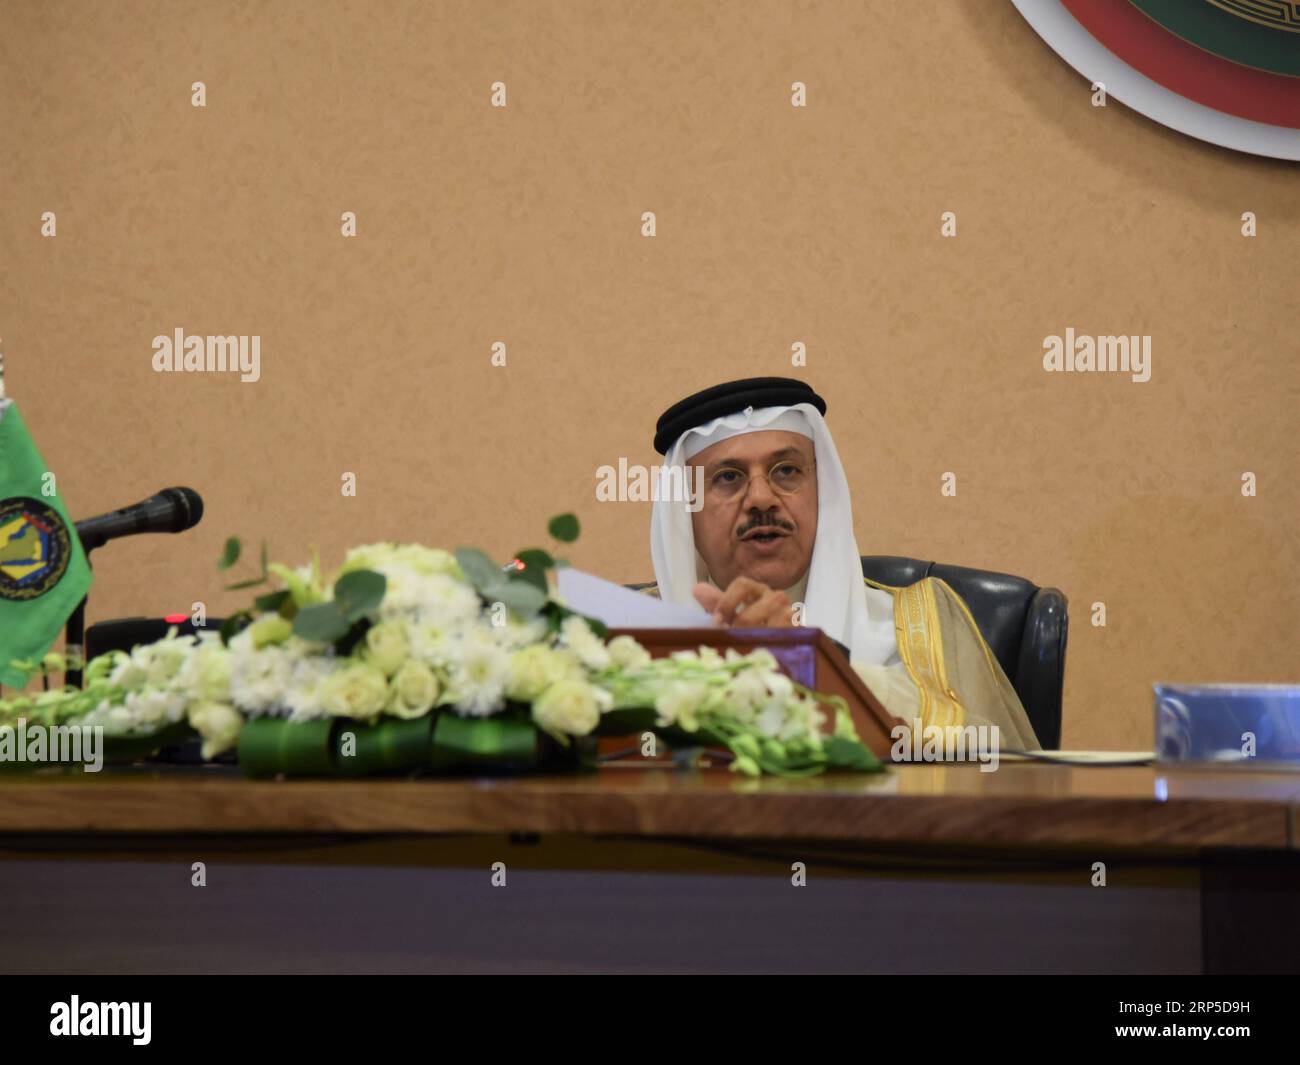 (181209) -- RIYADH, 9 dicembre 2018 -- il Segretario generale del Consiglio di cooperazione del Golfo (GCC) Abdul Latif bin Rashid al Zayani parla a una conferenza stampa a Riyadh, Arabia Saudita, il 9 dicembre 2018. Il ministro degli Esteri saudita Adel al-Jubeir ha affermato domenica che l'azione contro il Qatar mira a cambiare la sua politica, ha riferito al Arabiya TV. Al-Jubeir ha tenuto una conferenza stampa dopo la fine del 39° vertice del Consiglio di cooperazione del Golfo (CCG) a Riad. ) VERTICE ARABIA SAUDITA-RIYADH-GCC-CONFERENZA STAMPA TUXYIFAN PUBLICATIONXNOTXINXCHN Foto Stock